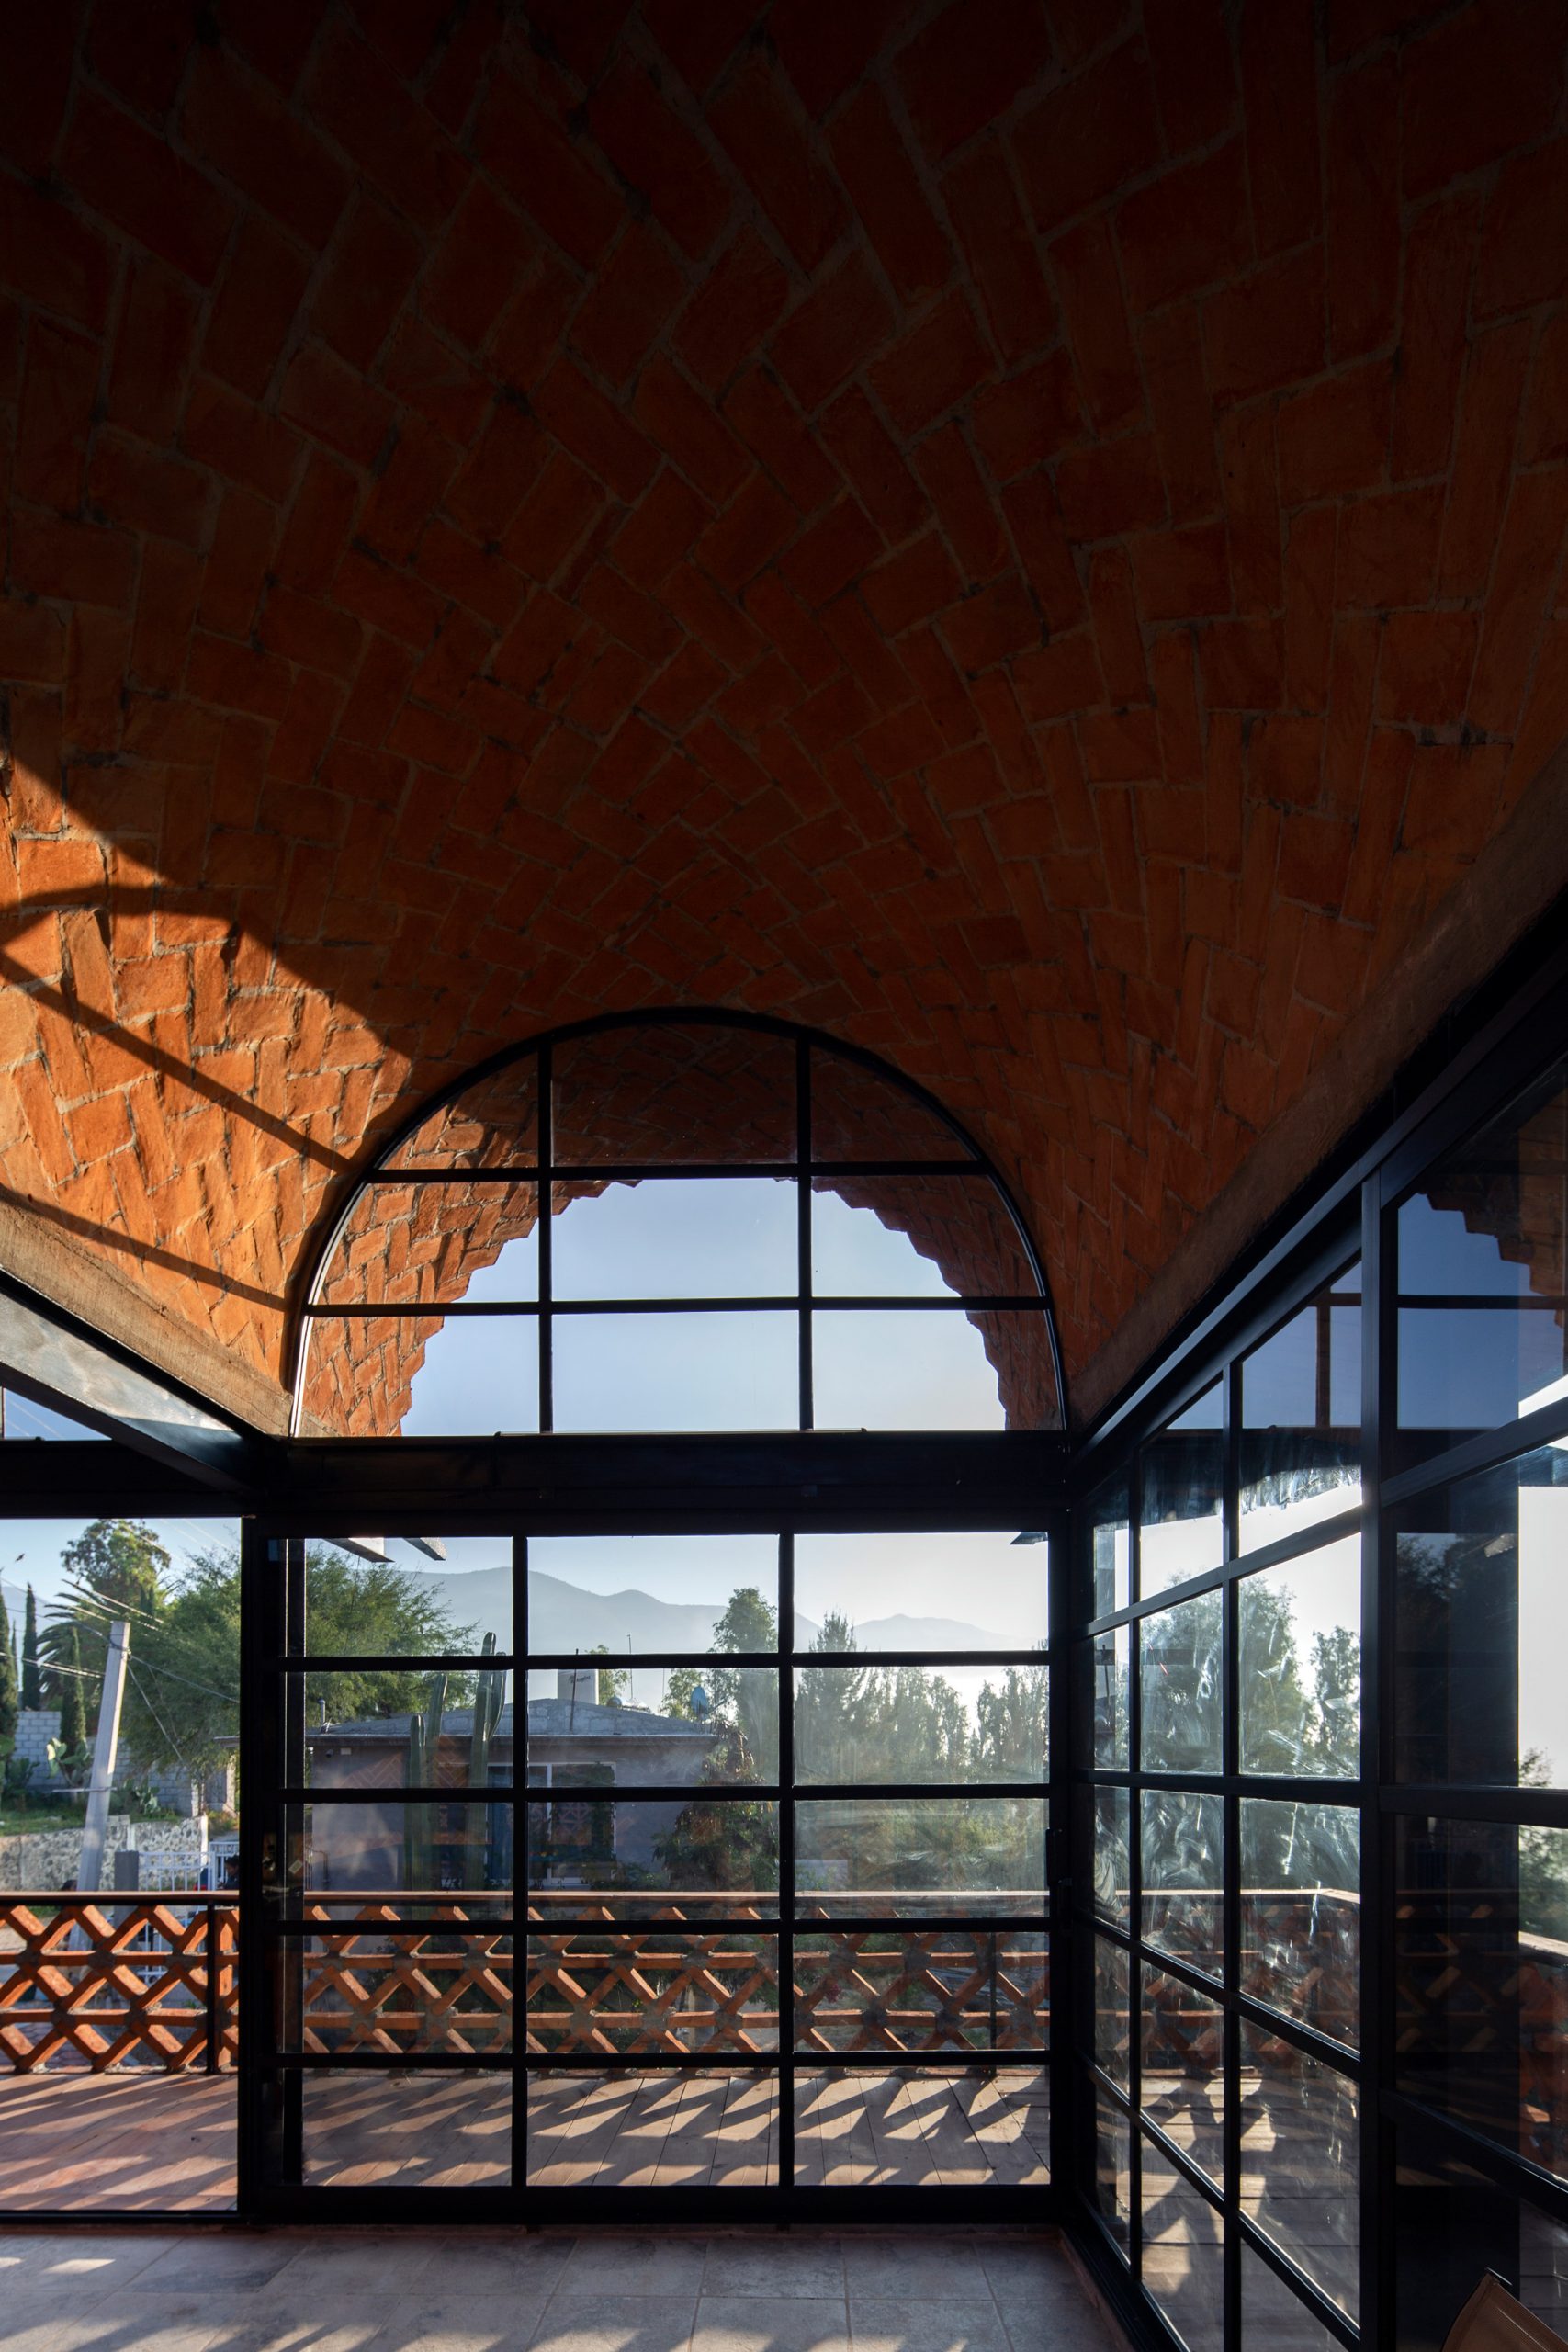 Brick vaults of Hñähñu Multimedia Center by Aldana Sanchez Architects